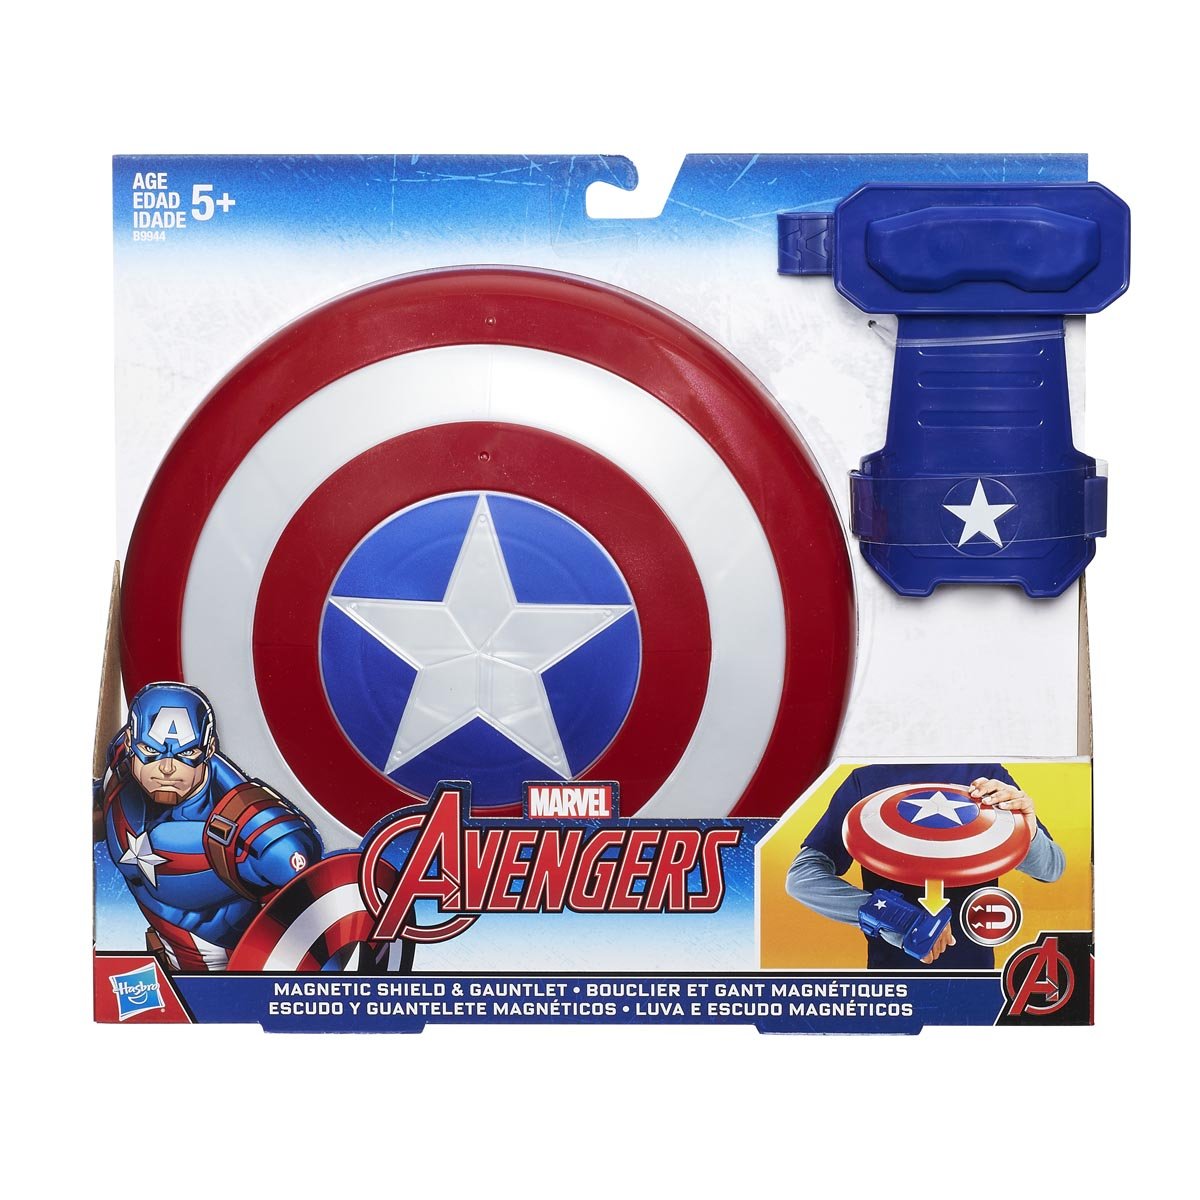 Capitán America Escudo Magnético Hasbro